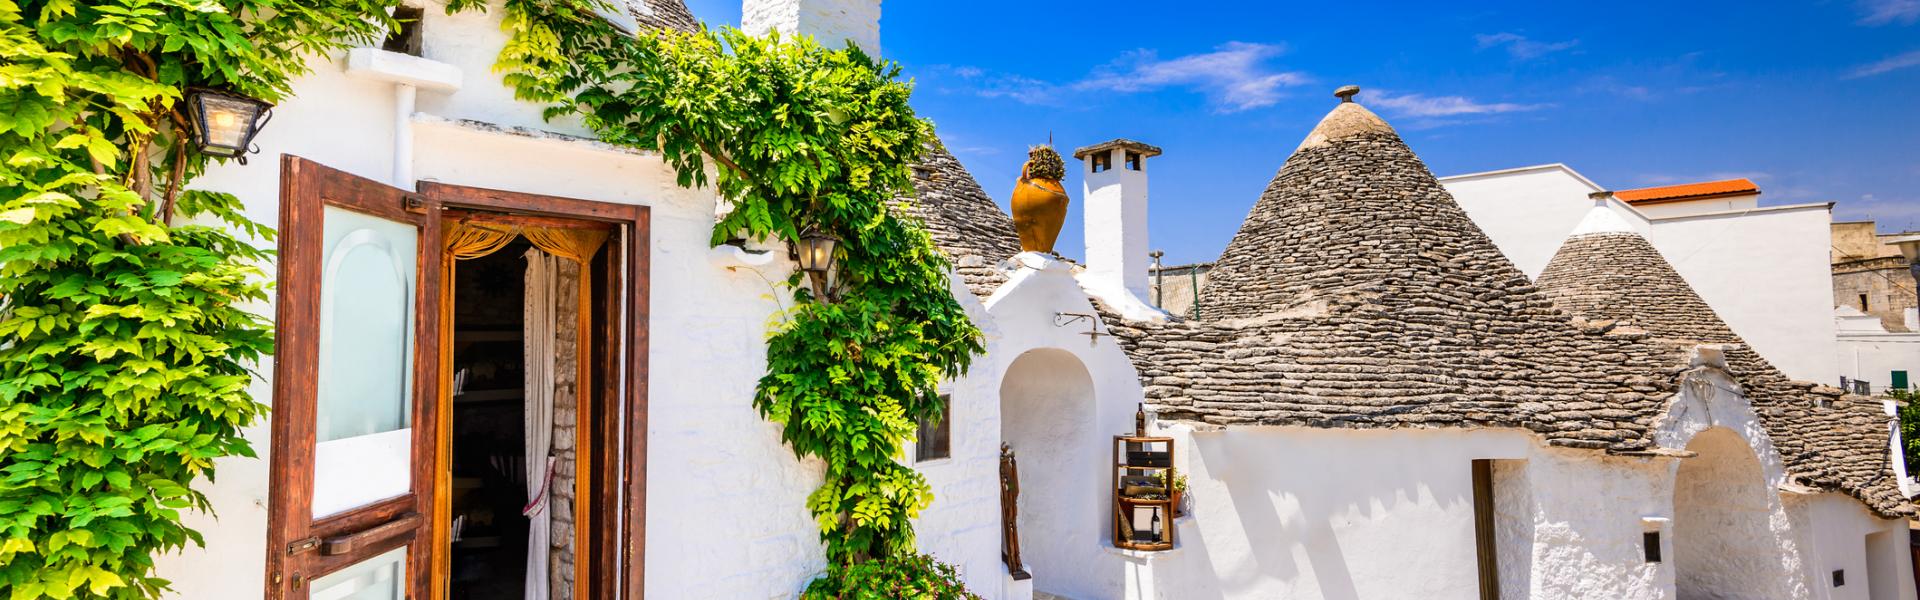 Ferienwohnungen und Ferienhäuser in Apulien - HomeToGo